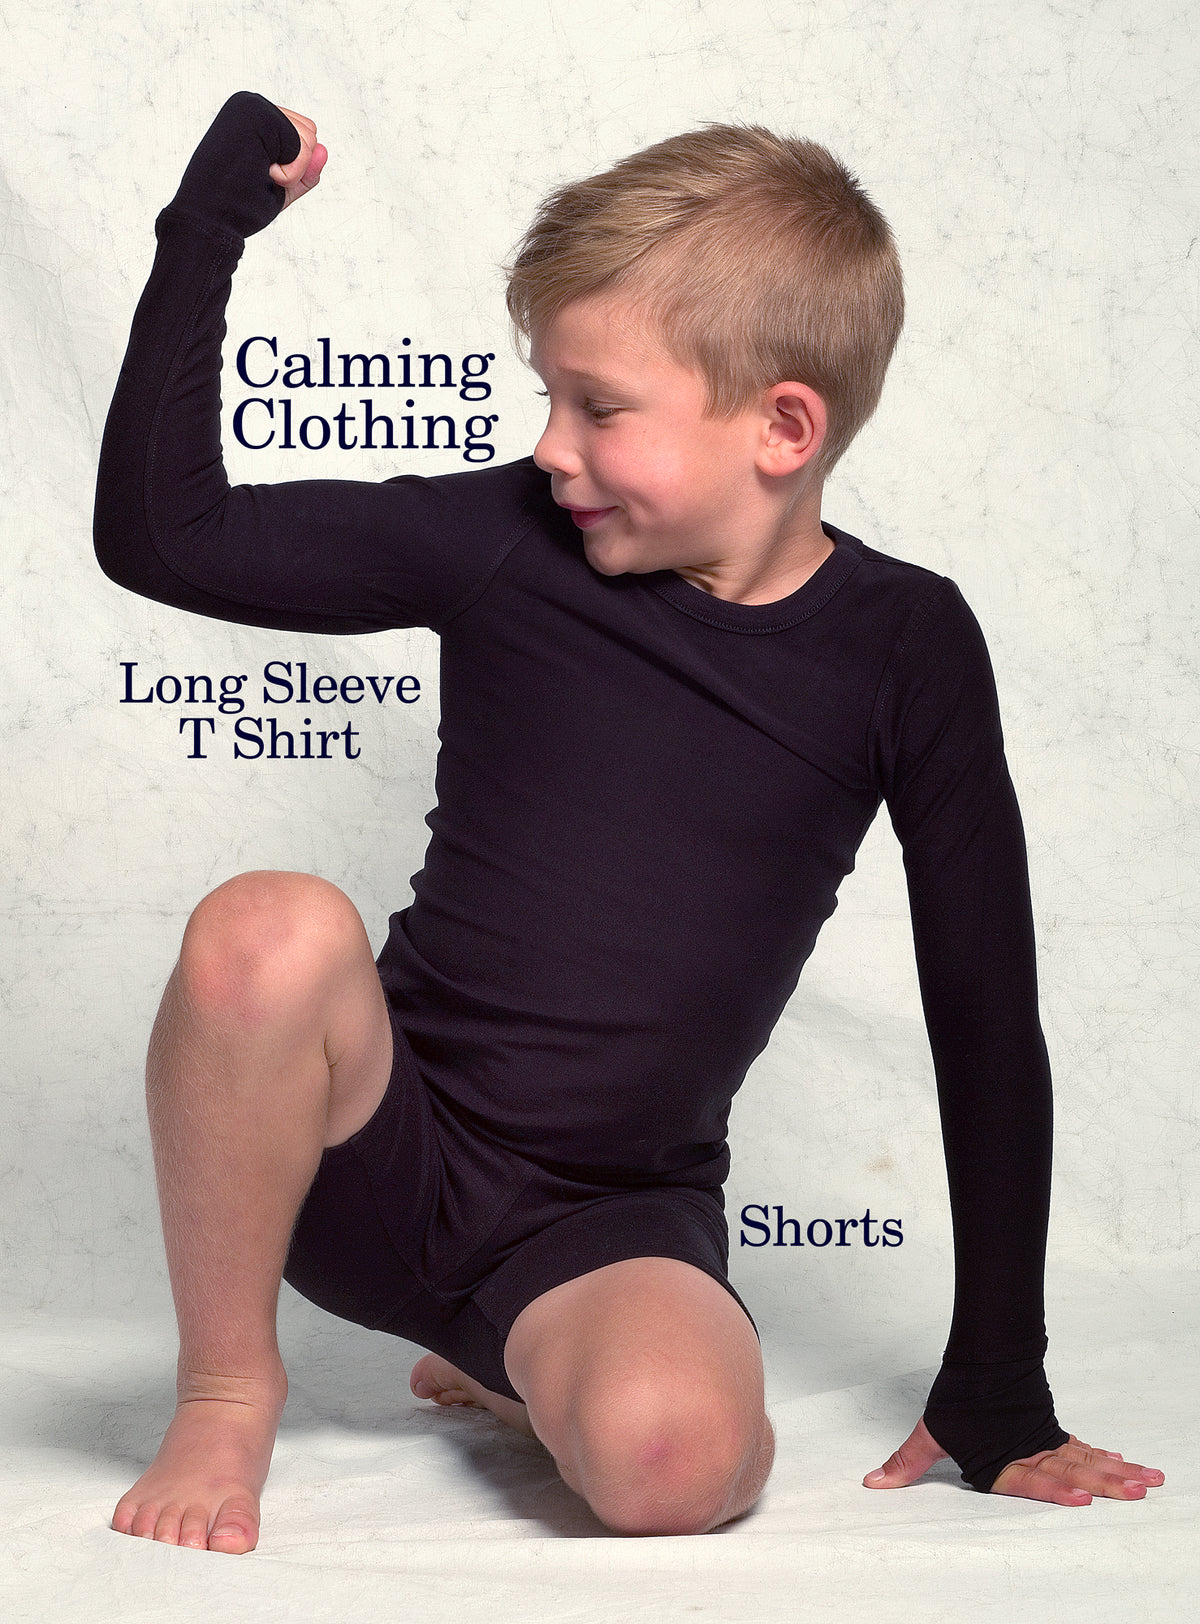 Calming Clothing Shorts